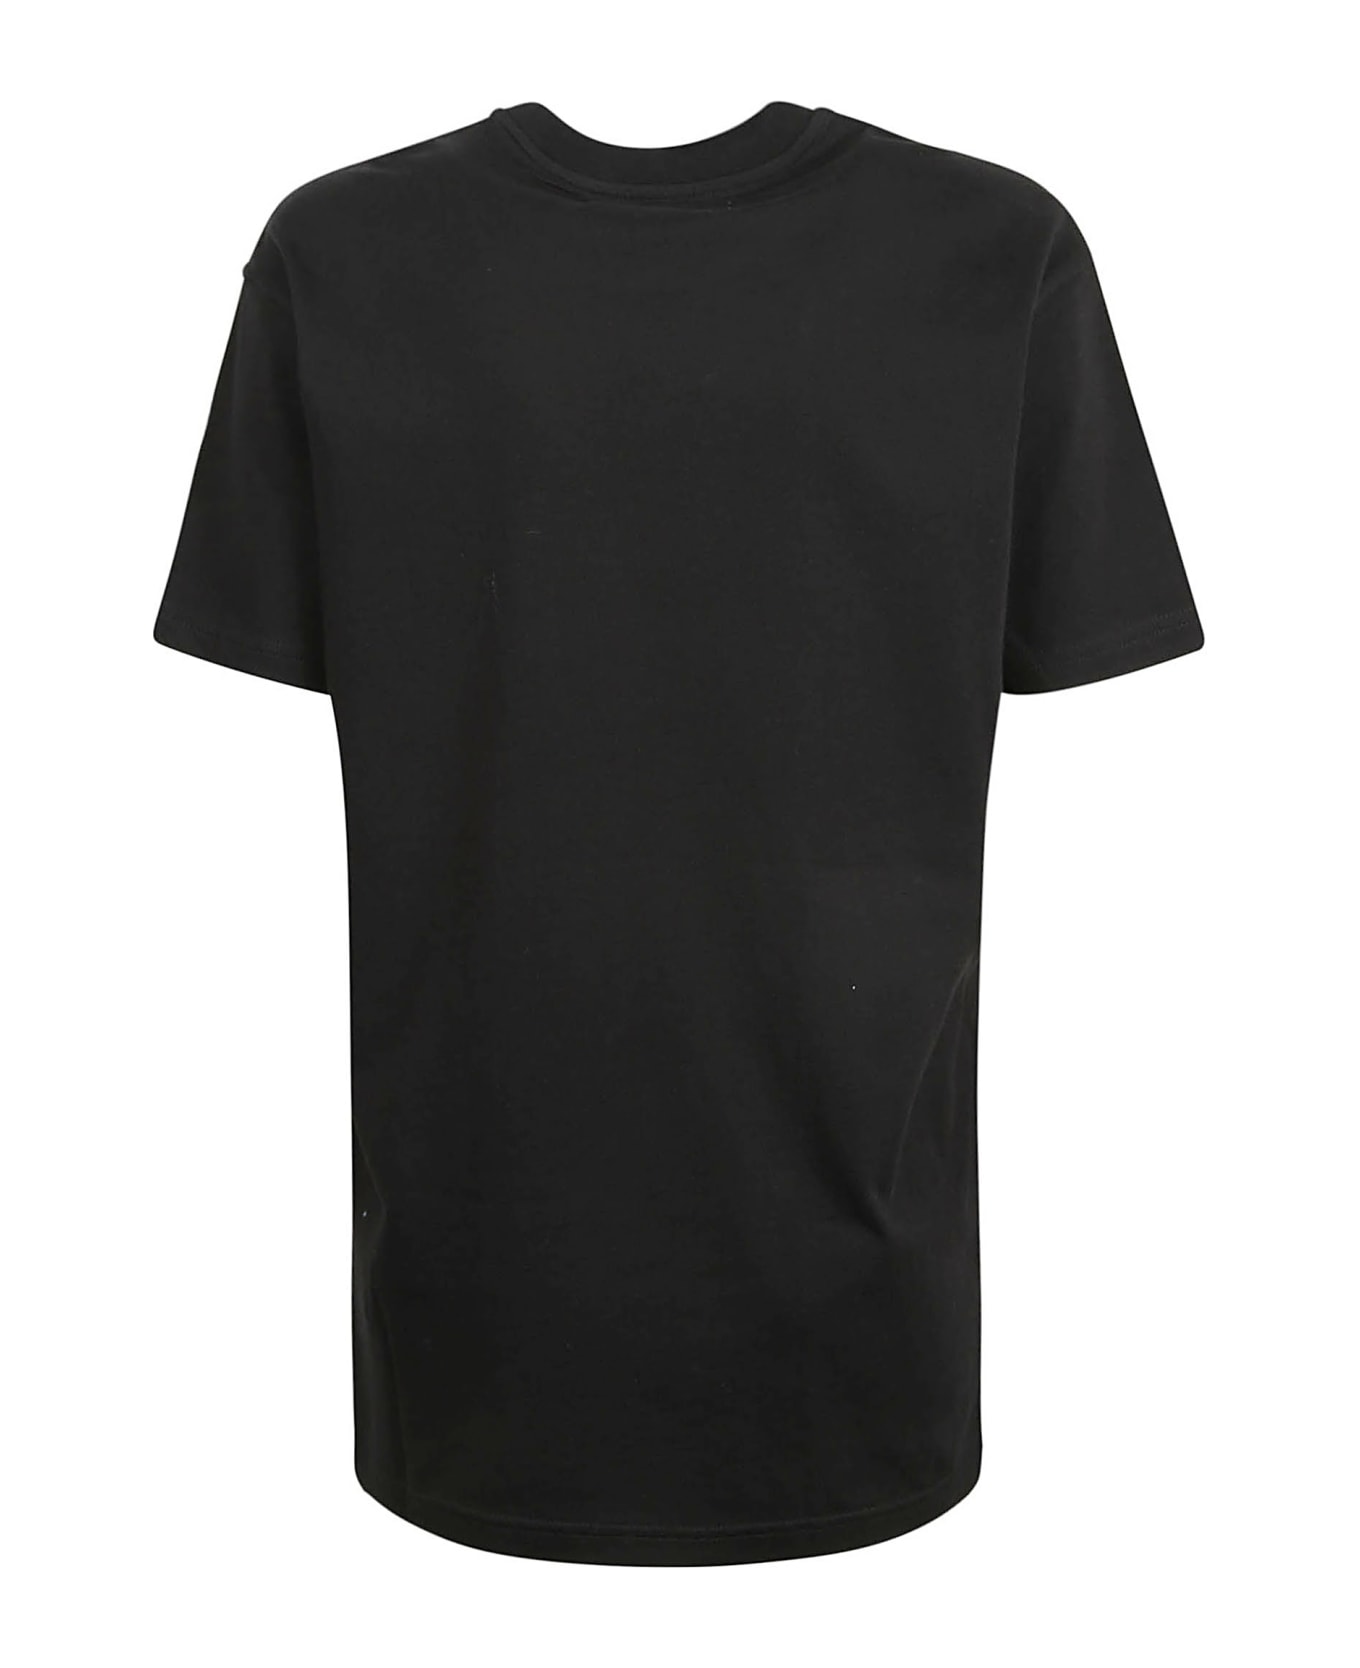 Vivienne Westwood Summer Classic T-shirt - Black